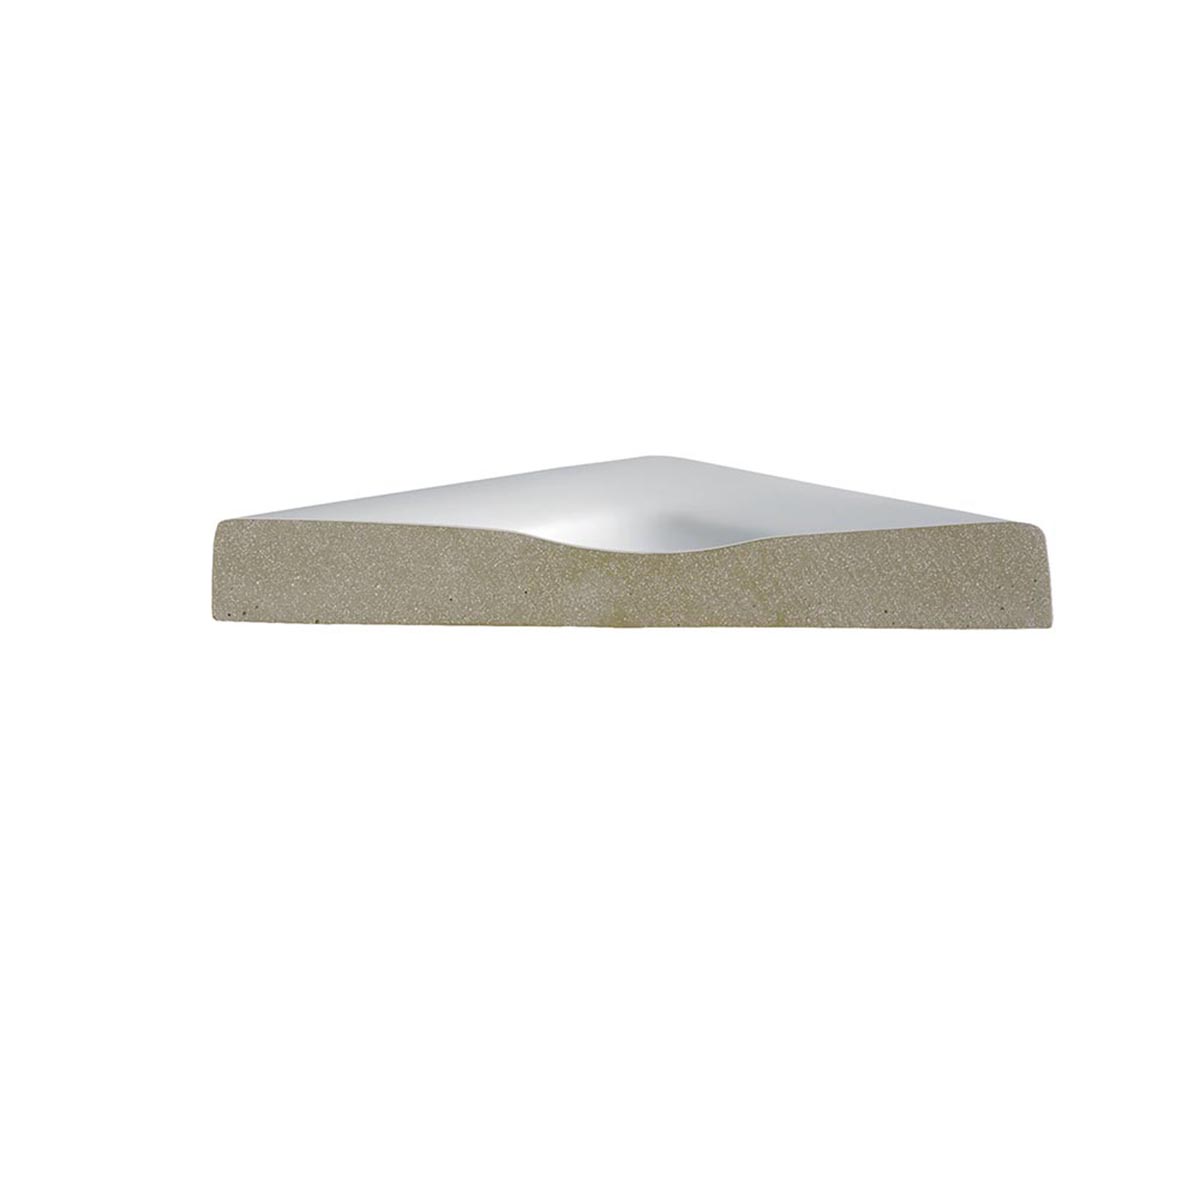 HSK Marmor-Polymer Quadrat Duschwanne superflach-Weiß-100 x 100 cm-ohne AntiSlip-Beschichtung-mit Aquaproof-Dichtset